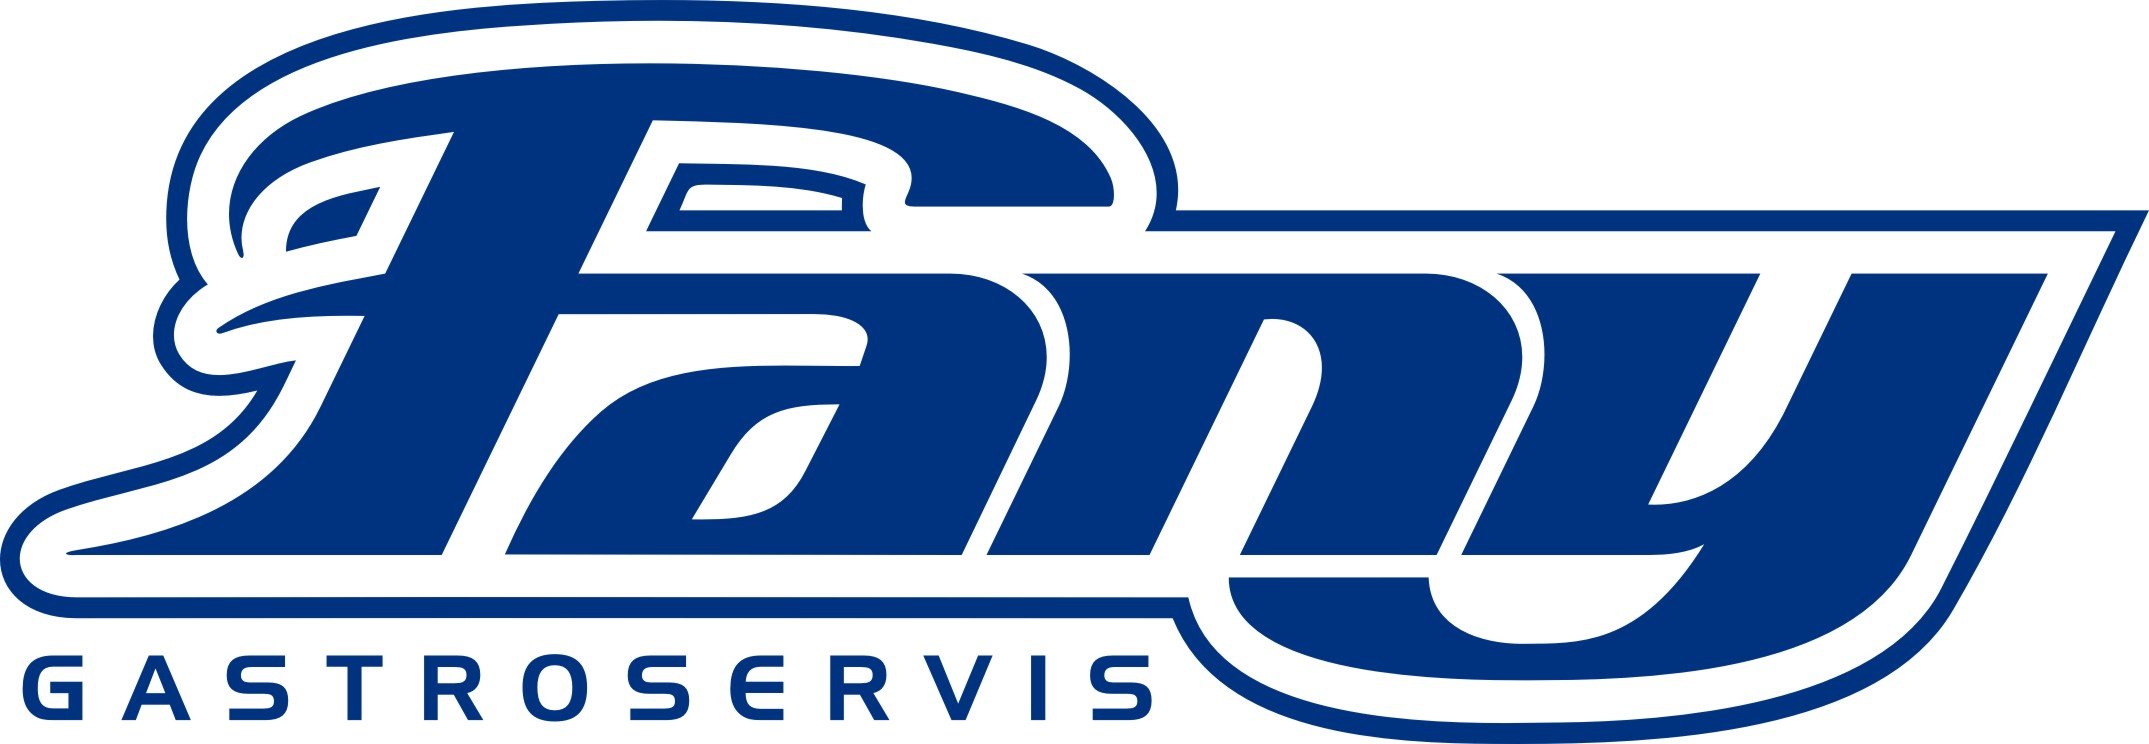 Logo Fany gastroservis